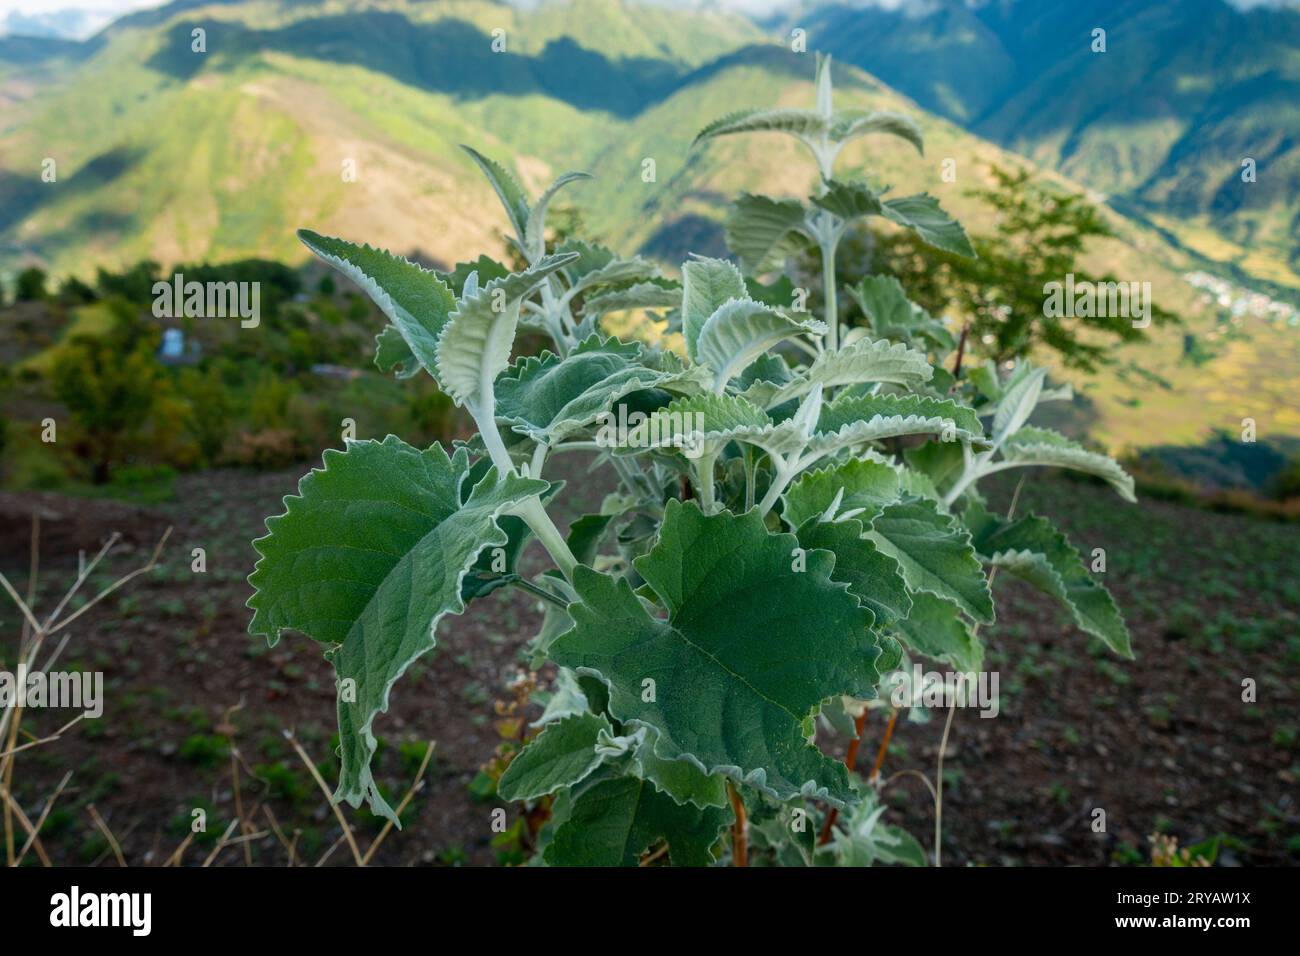 Chrozophora tinctoria, une plante vivace aux fleurs hermaphrodites, prospère dans la région himalayenne de l'Uttarakhand, en Inde Banque D'Images